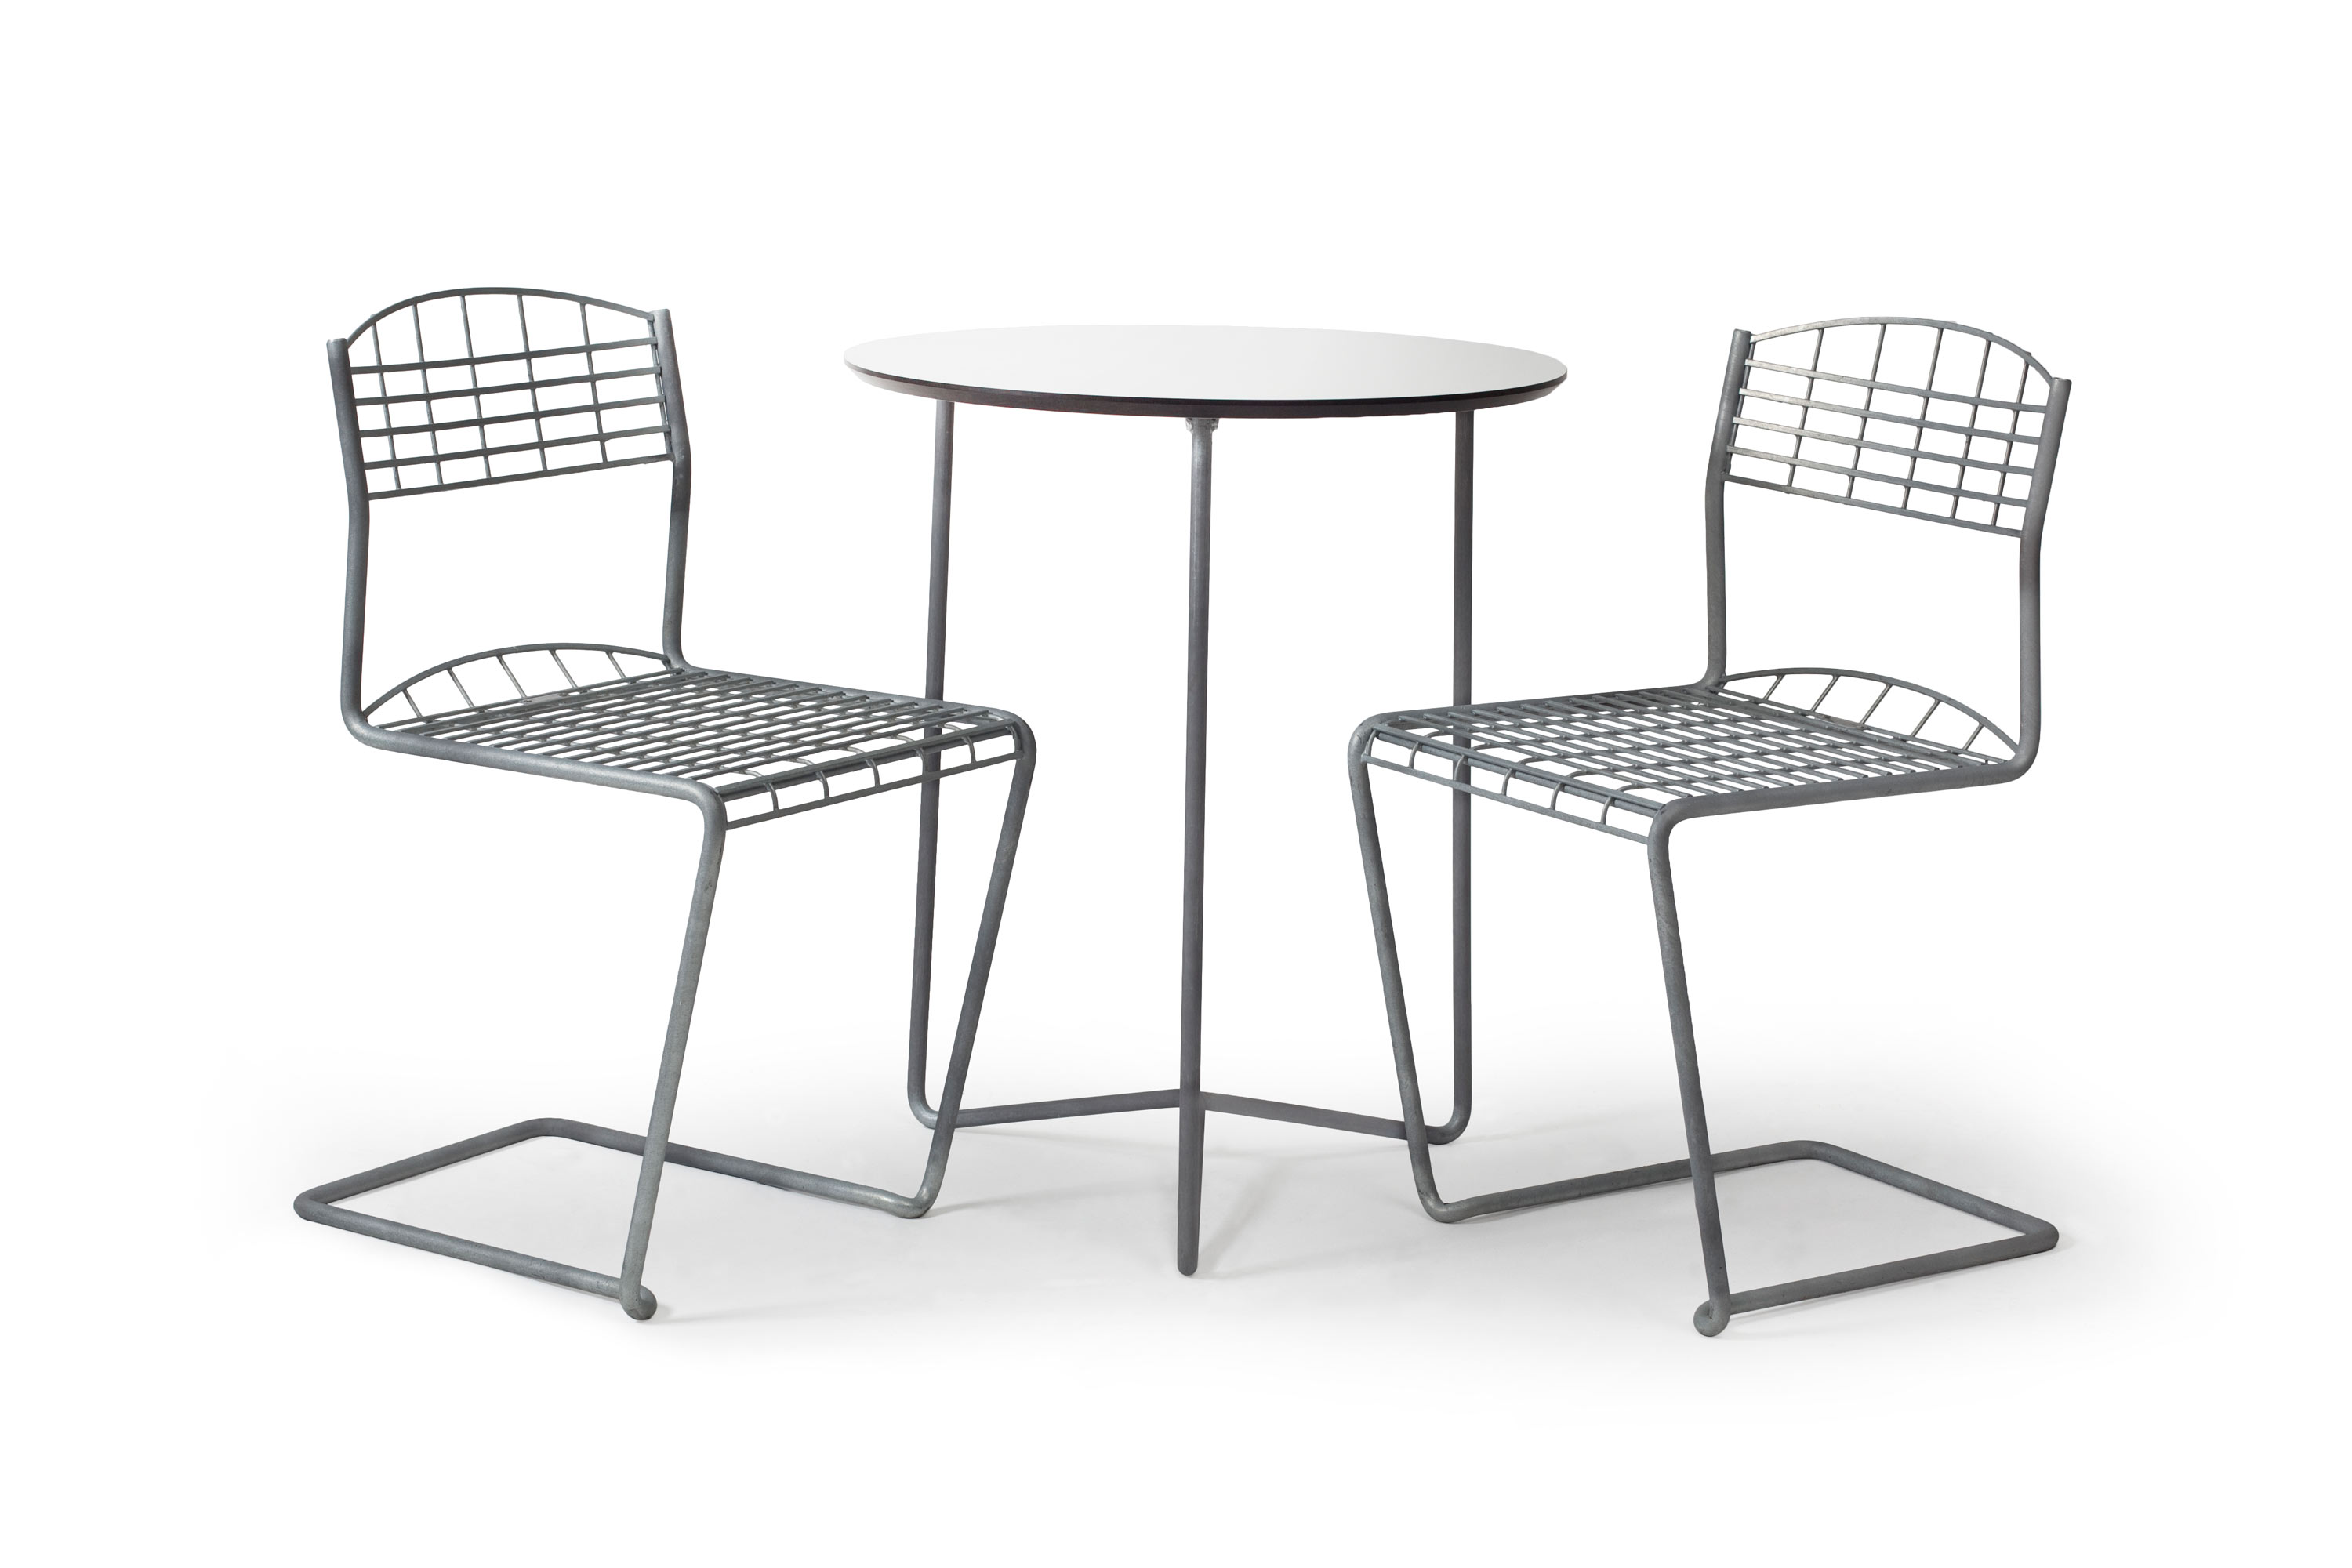 Grythyttan Stålmöbler High-tech cafésæt Galvanisere stål 2 stole & bord 60 cm